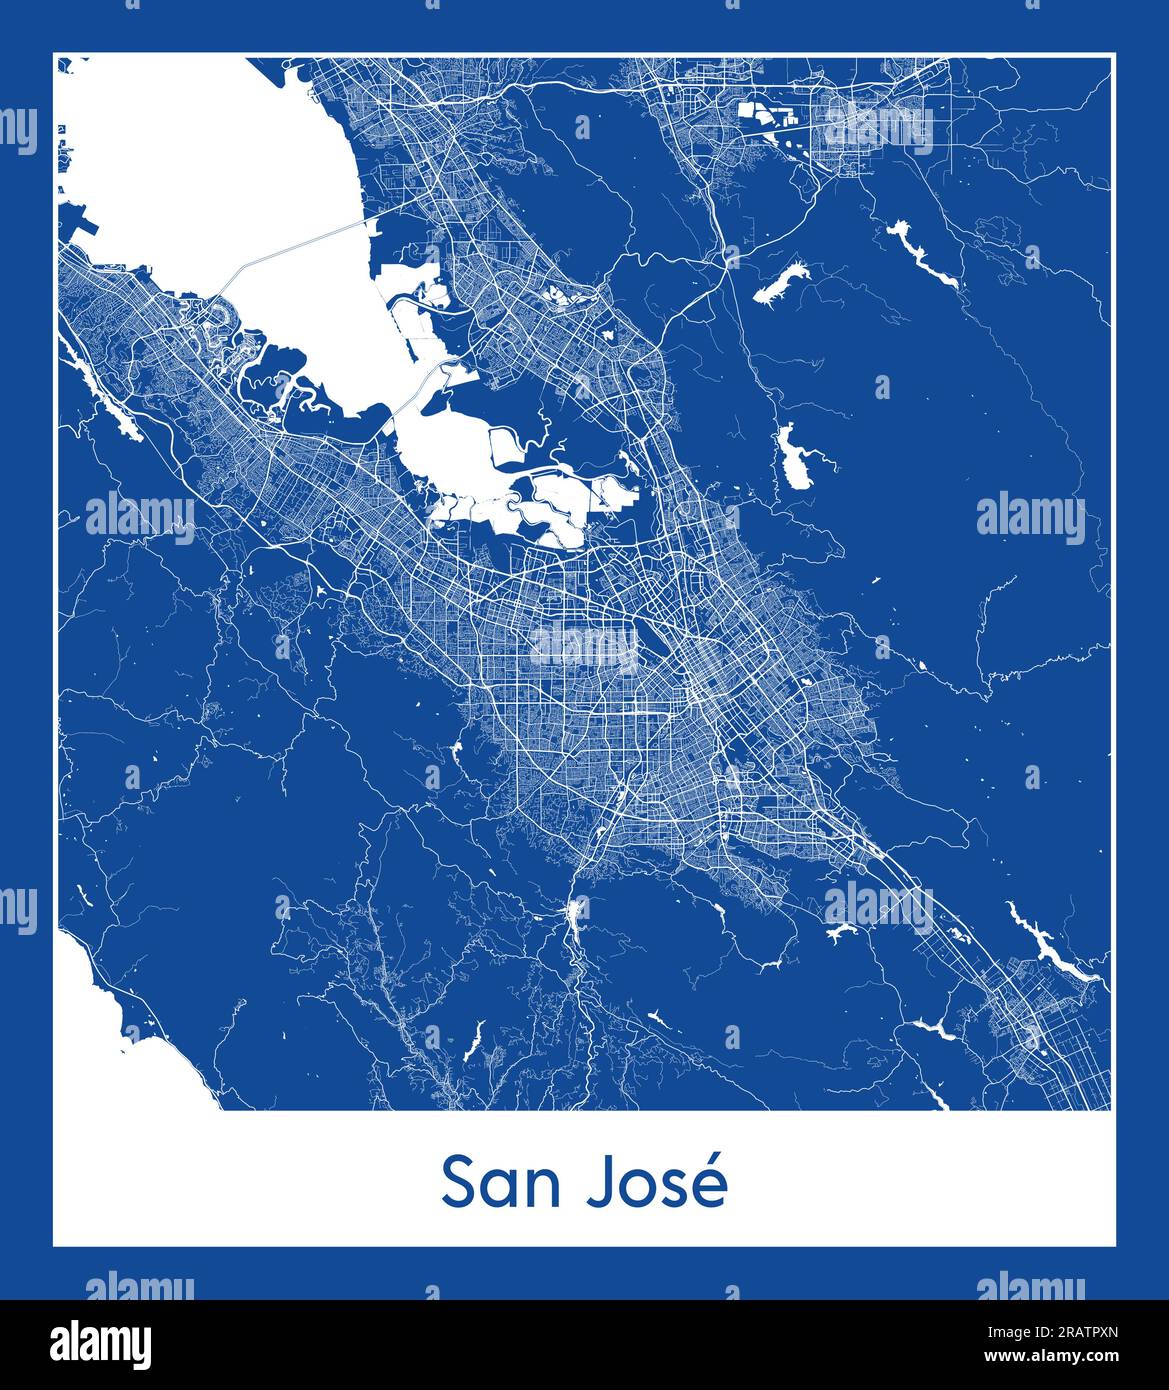 San Jose États-Unis Amérique du Nord carte de la ville illustration vectorielle d'impression bleue Illustration de Vecteur